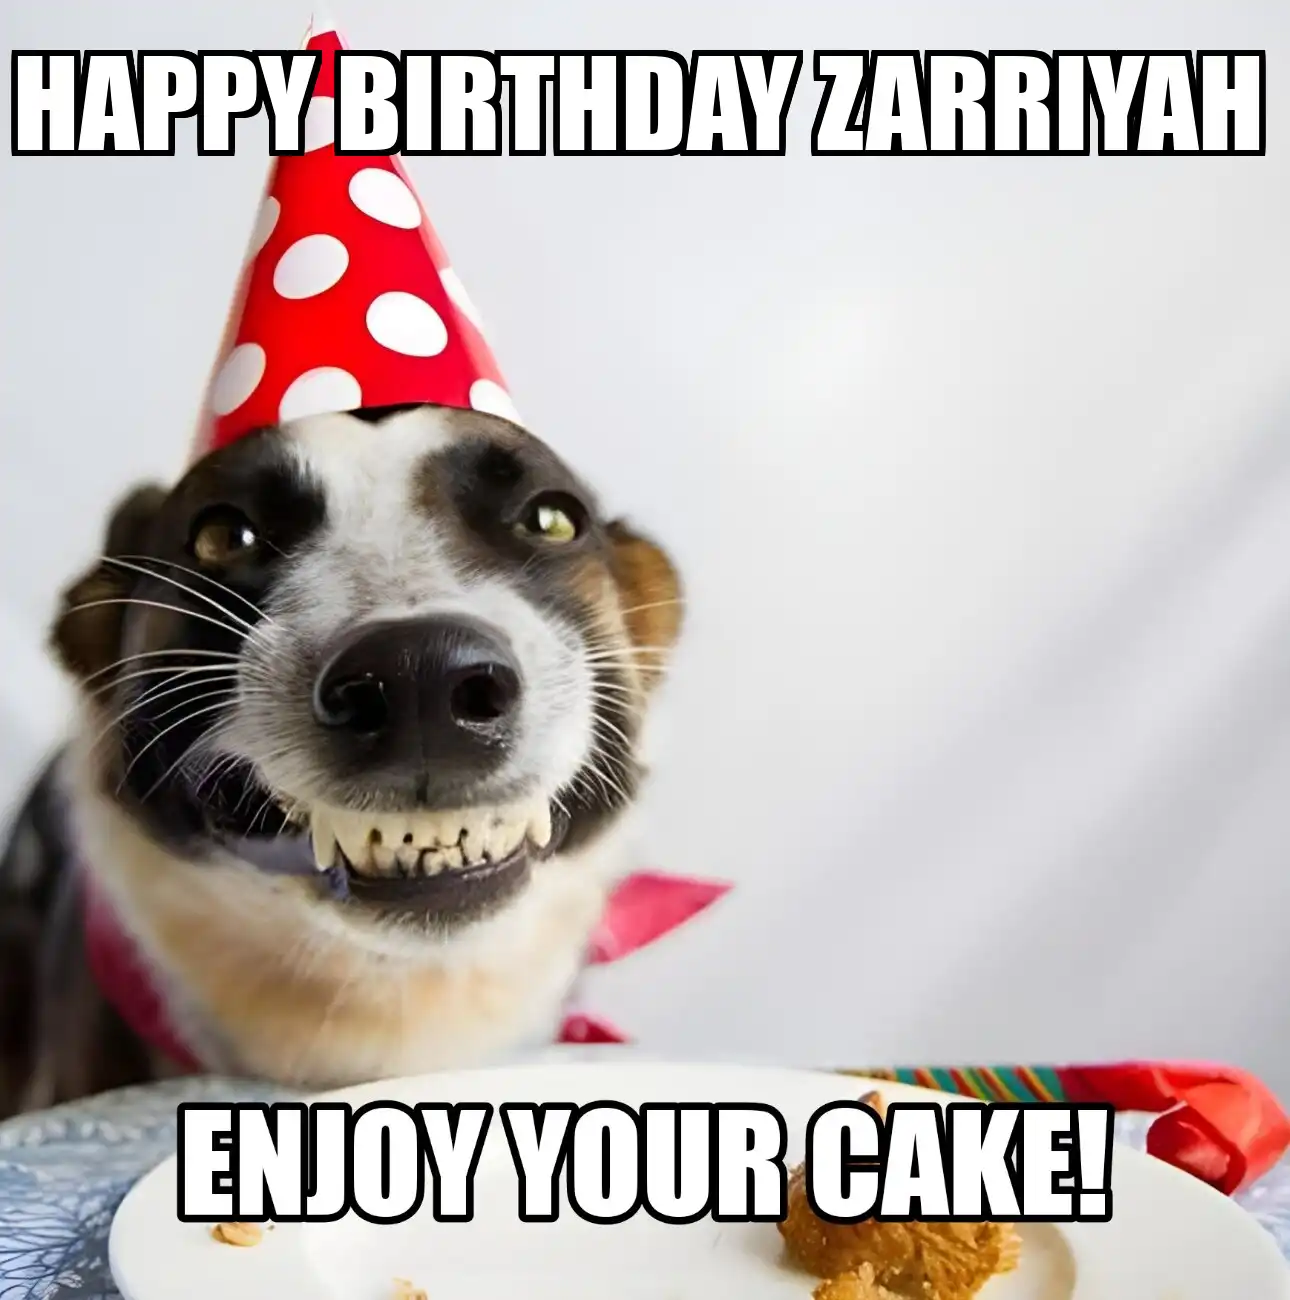 Happy Birthday Zarriyah Enjoy Your Cake Dog Meme